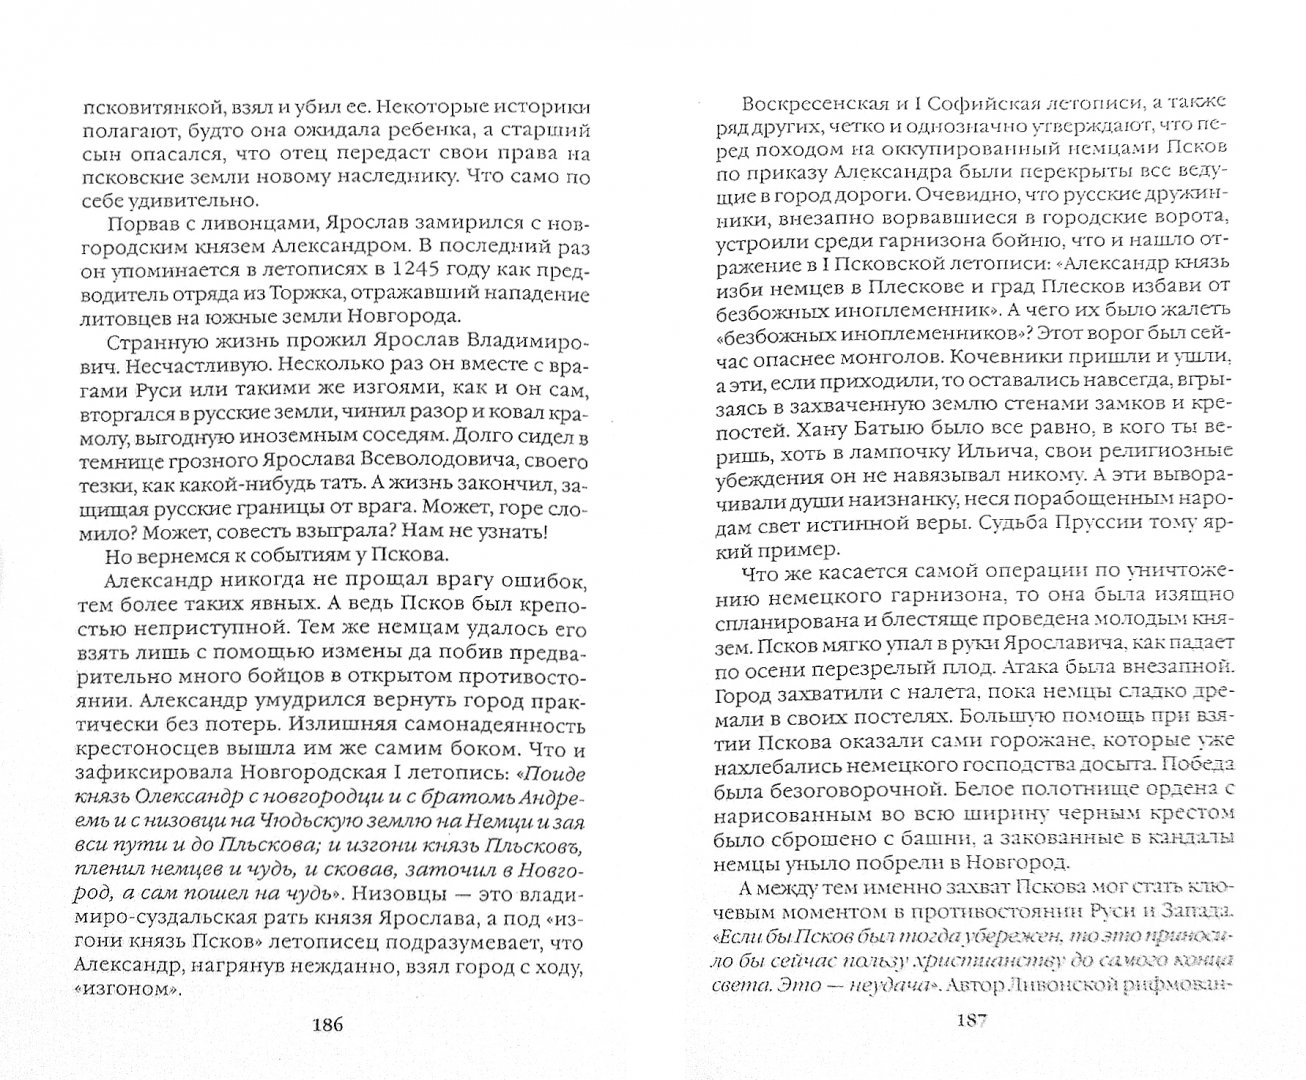 Иллюстрация 1 из 9 для Русь против европейского ига - Филиппов, Елисеев | Лабиринт - книги. Источник: Лабиринт